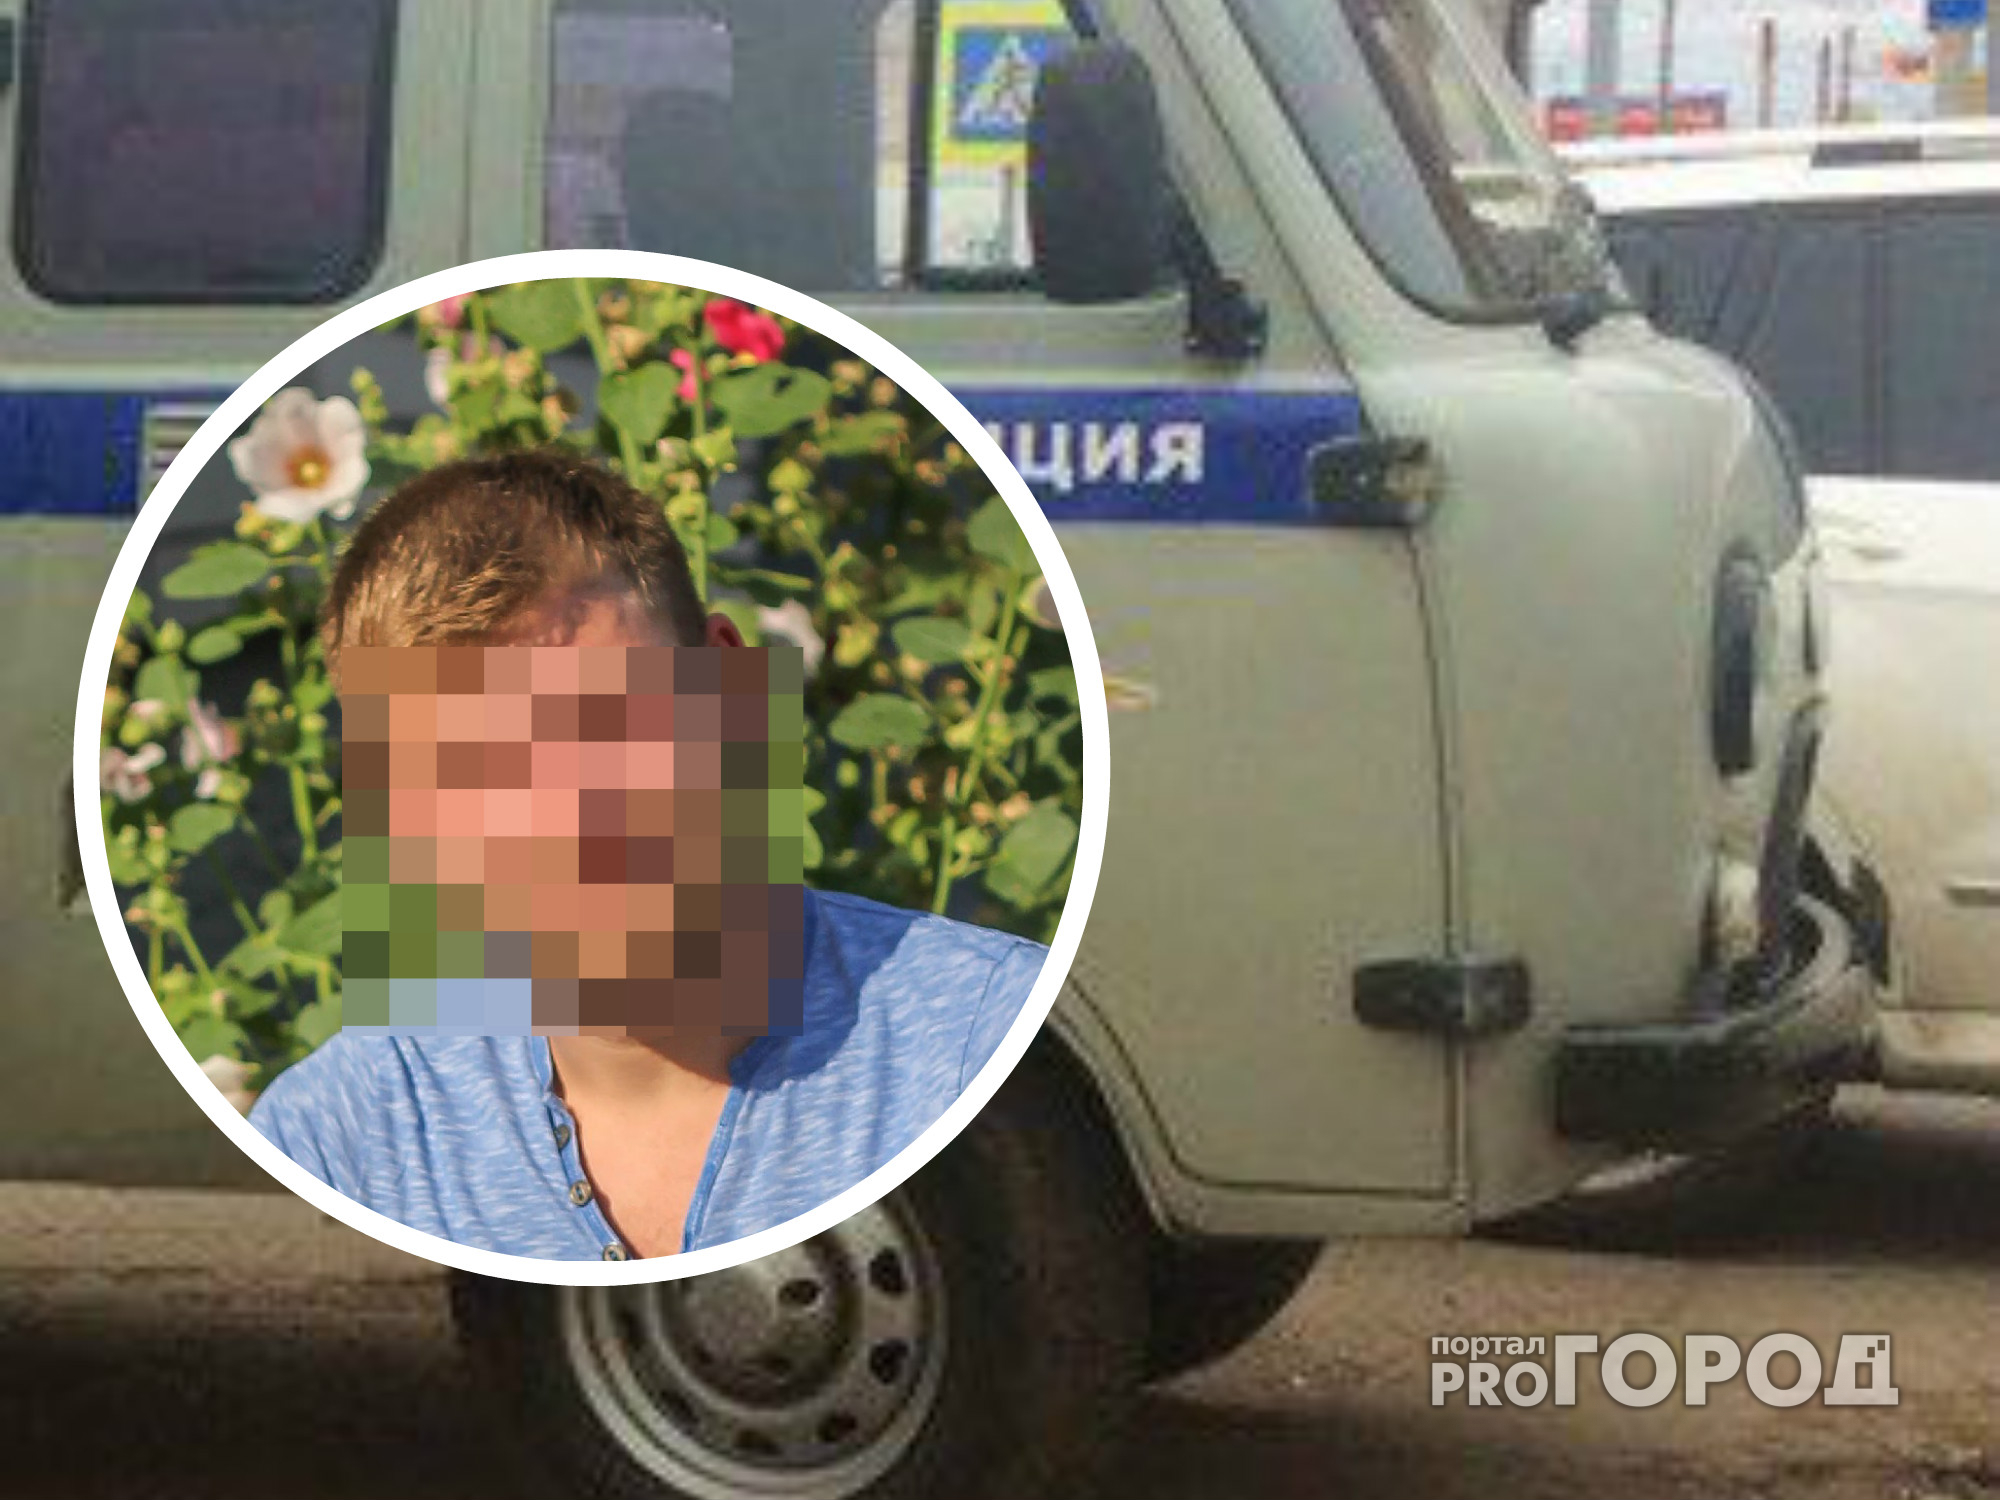 Ранее судимый 26-летний житель Алатыря угнал грузовик у рыбака